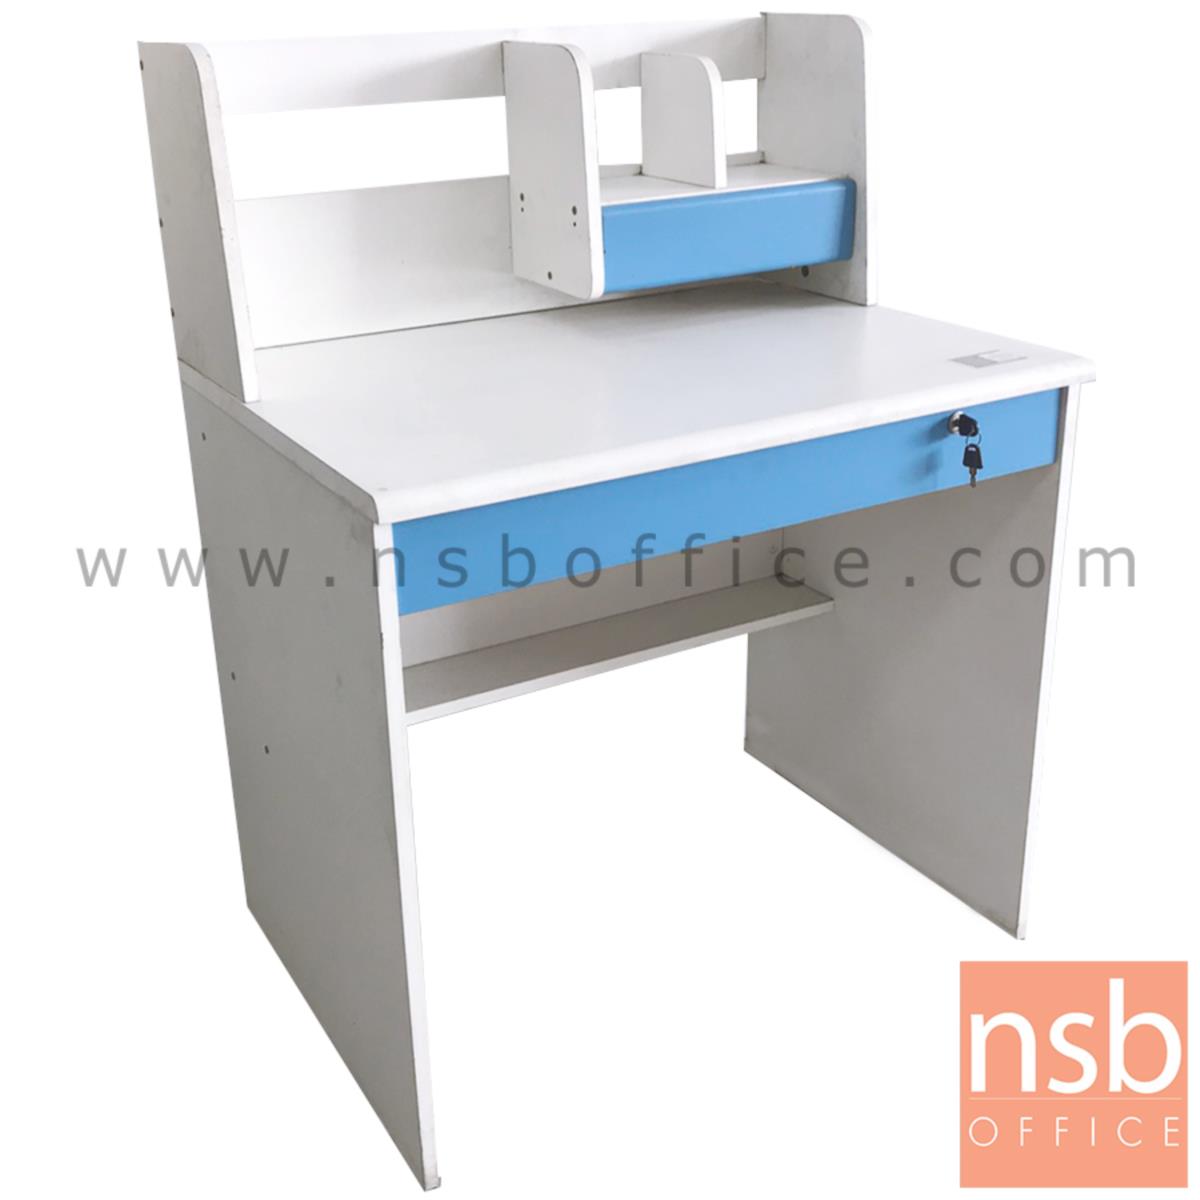 L01A037:โต๊ะทำงาน 2 ลิ้นชัก   ขนาด 80W*106H cm.  สีขาว-ฟ้า